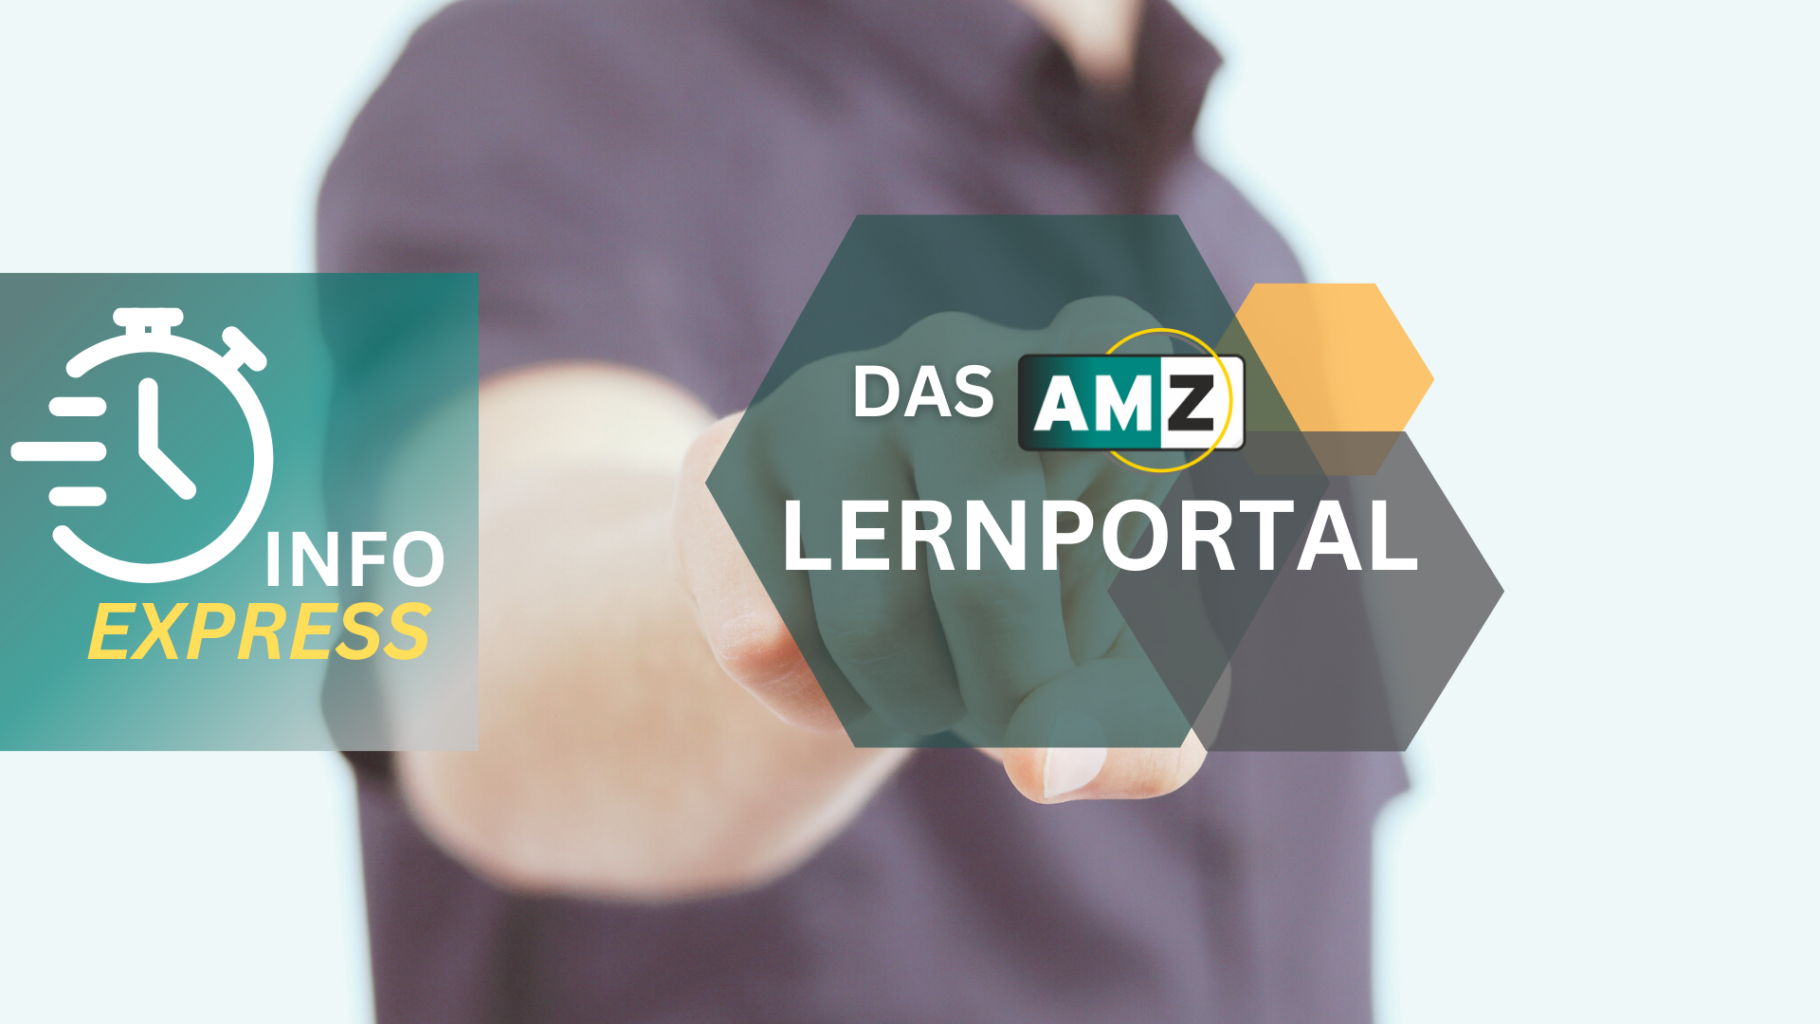 AMZ Lernportal - Paket Basis für Mitglieder kostenlos